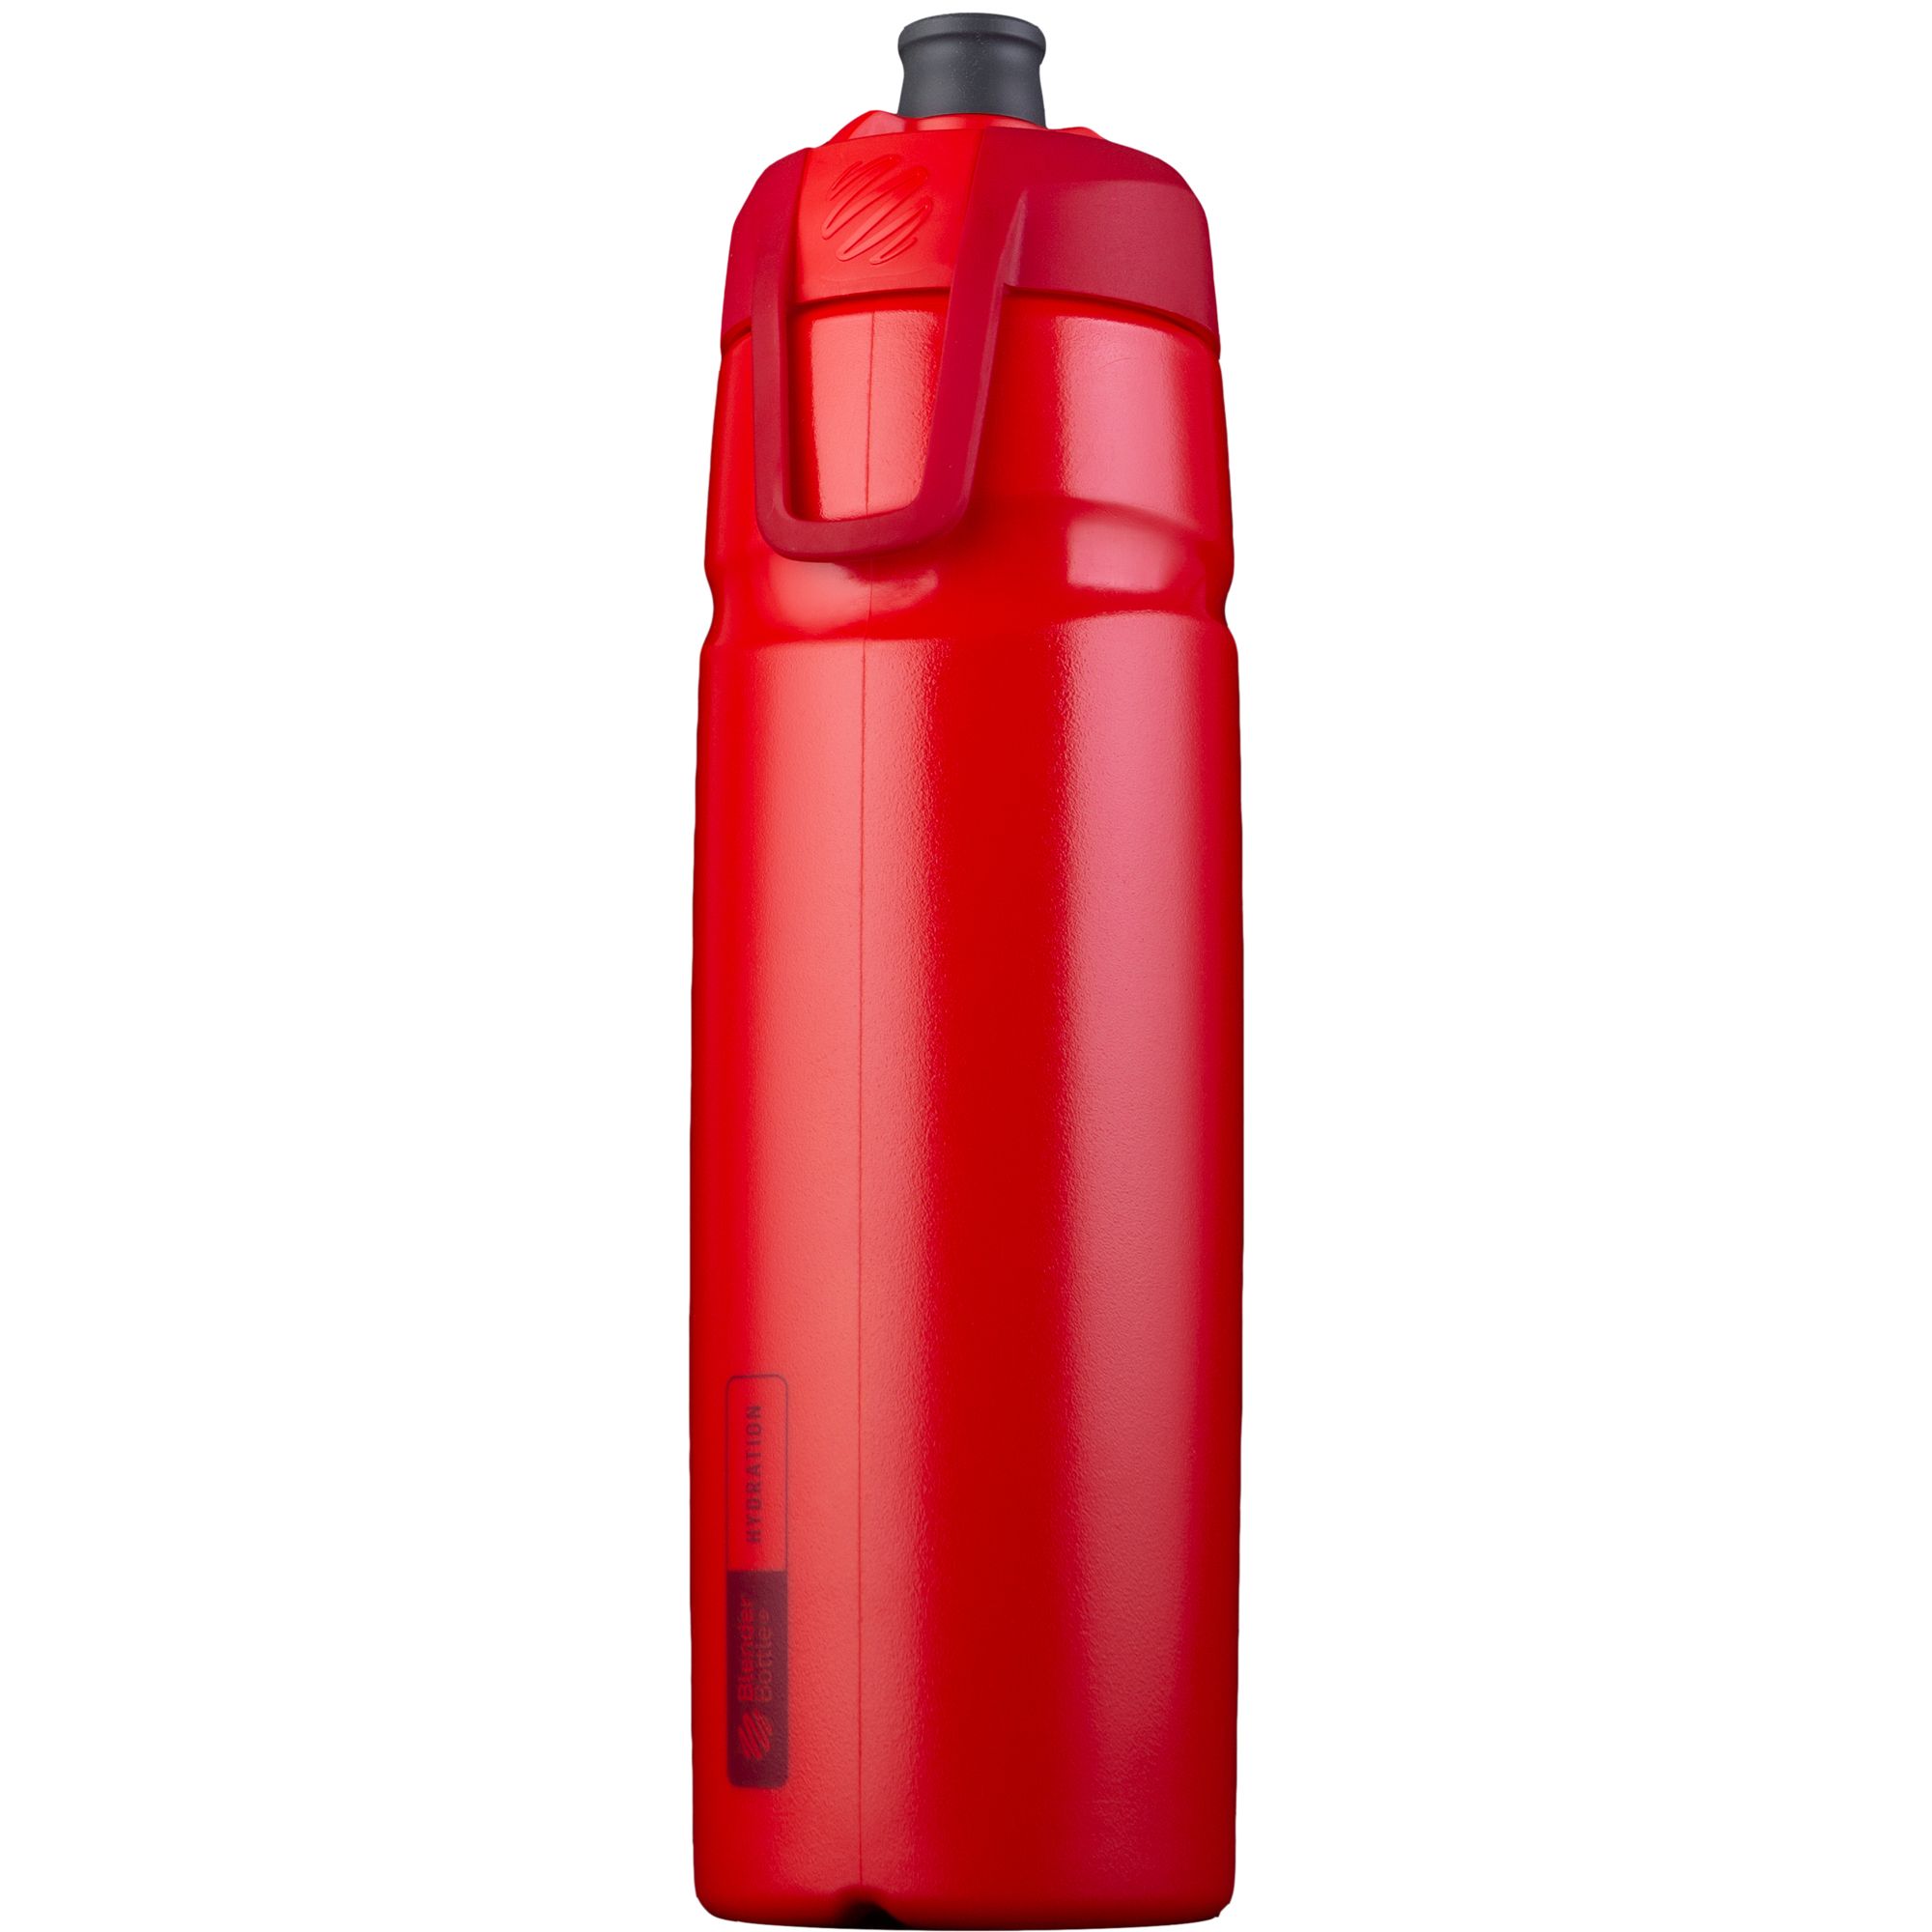 Halex Sports (940ml) - Innovatives Design und Strohhalm für aufrechtes Trinken -rot